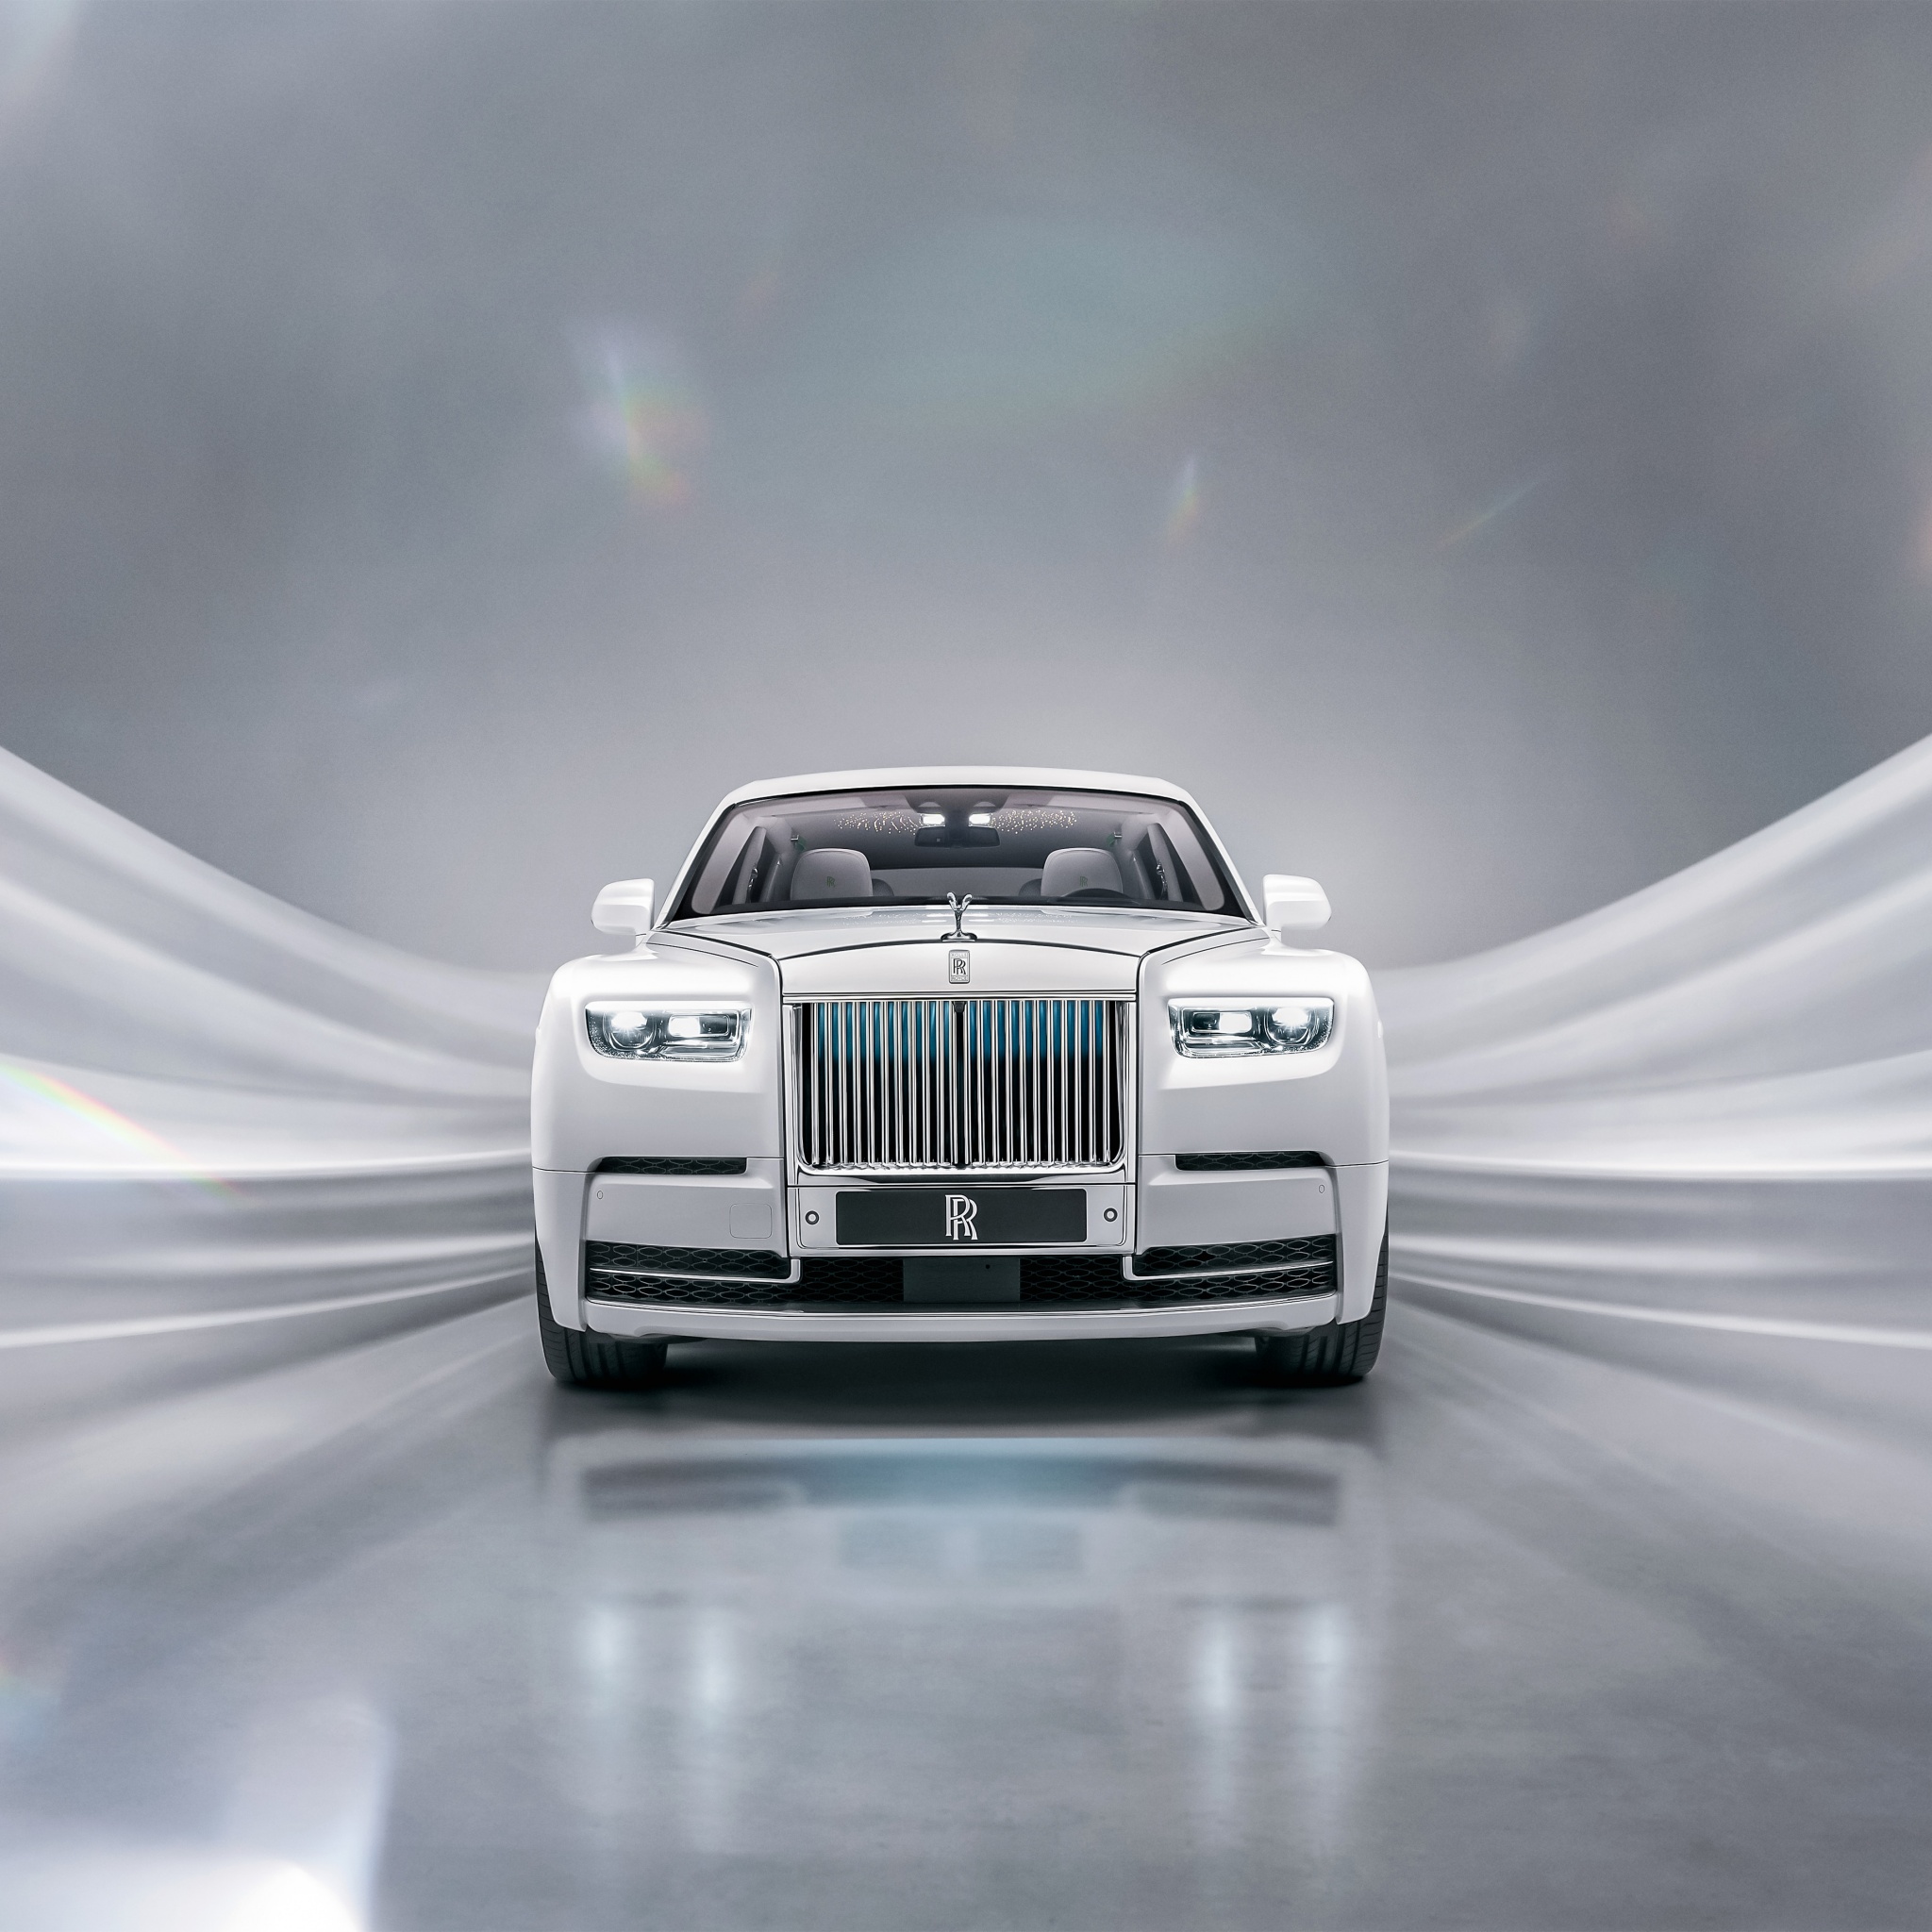 Rolls-Royce Phantom EWB Platino - một sự kết hợp hoàn hảo giữa sự sang trọng và đặc biệt. Xe được thiết kế đẹp mắt và sang trọng từng centimet, từ nội thất đến bên ngoài, mang lại cảm giác hoàn toàn khác biệt cho người dùng. Hãy ngắm nhìn và tận hưởng vẻ đẹp tuyệt vời của chiếc xe huyền thoại này qua hình ảnh chất lượng cao! 